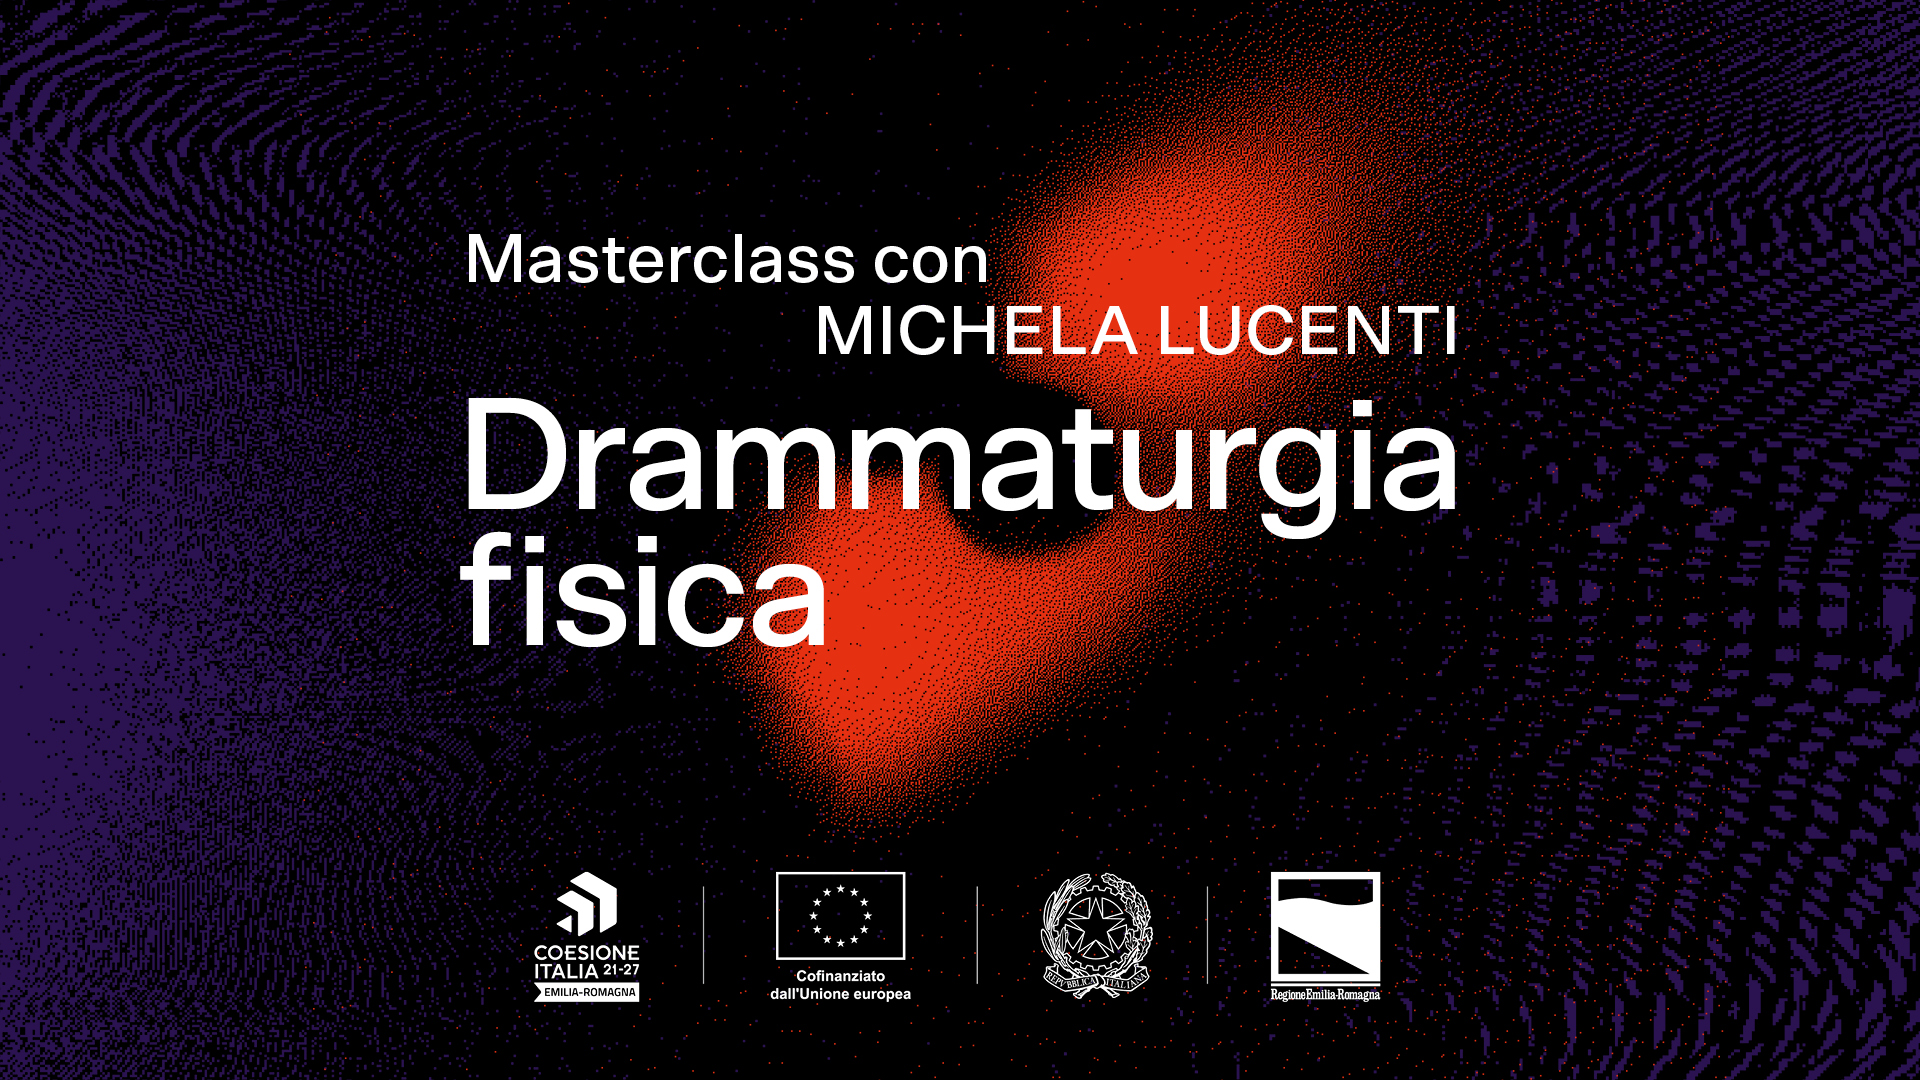 Drammaturgia Fisica. Masterclass con Michela Lucenti